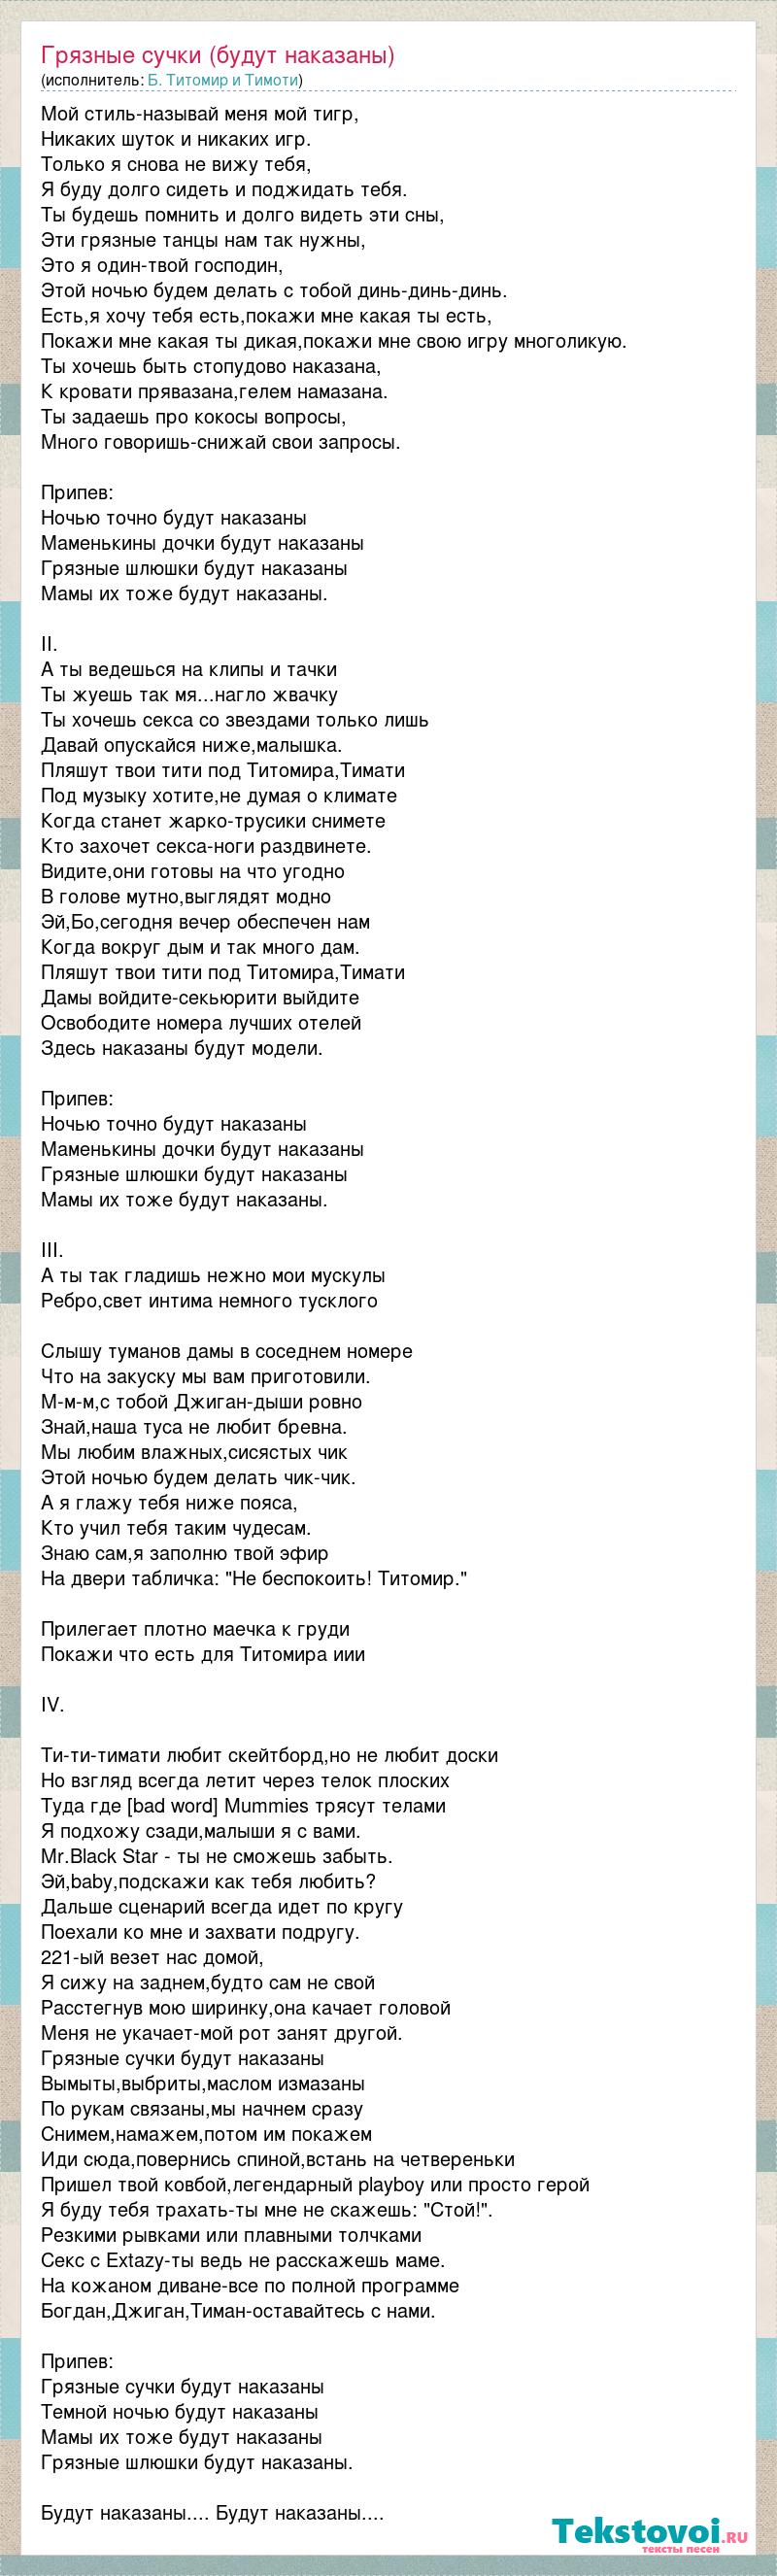 Грязные сучки будут наказаны (Rublev Remix) | Тимати feat. Богдан Титомир Lyrics, Meaning & Videos